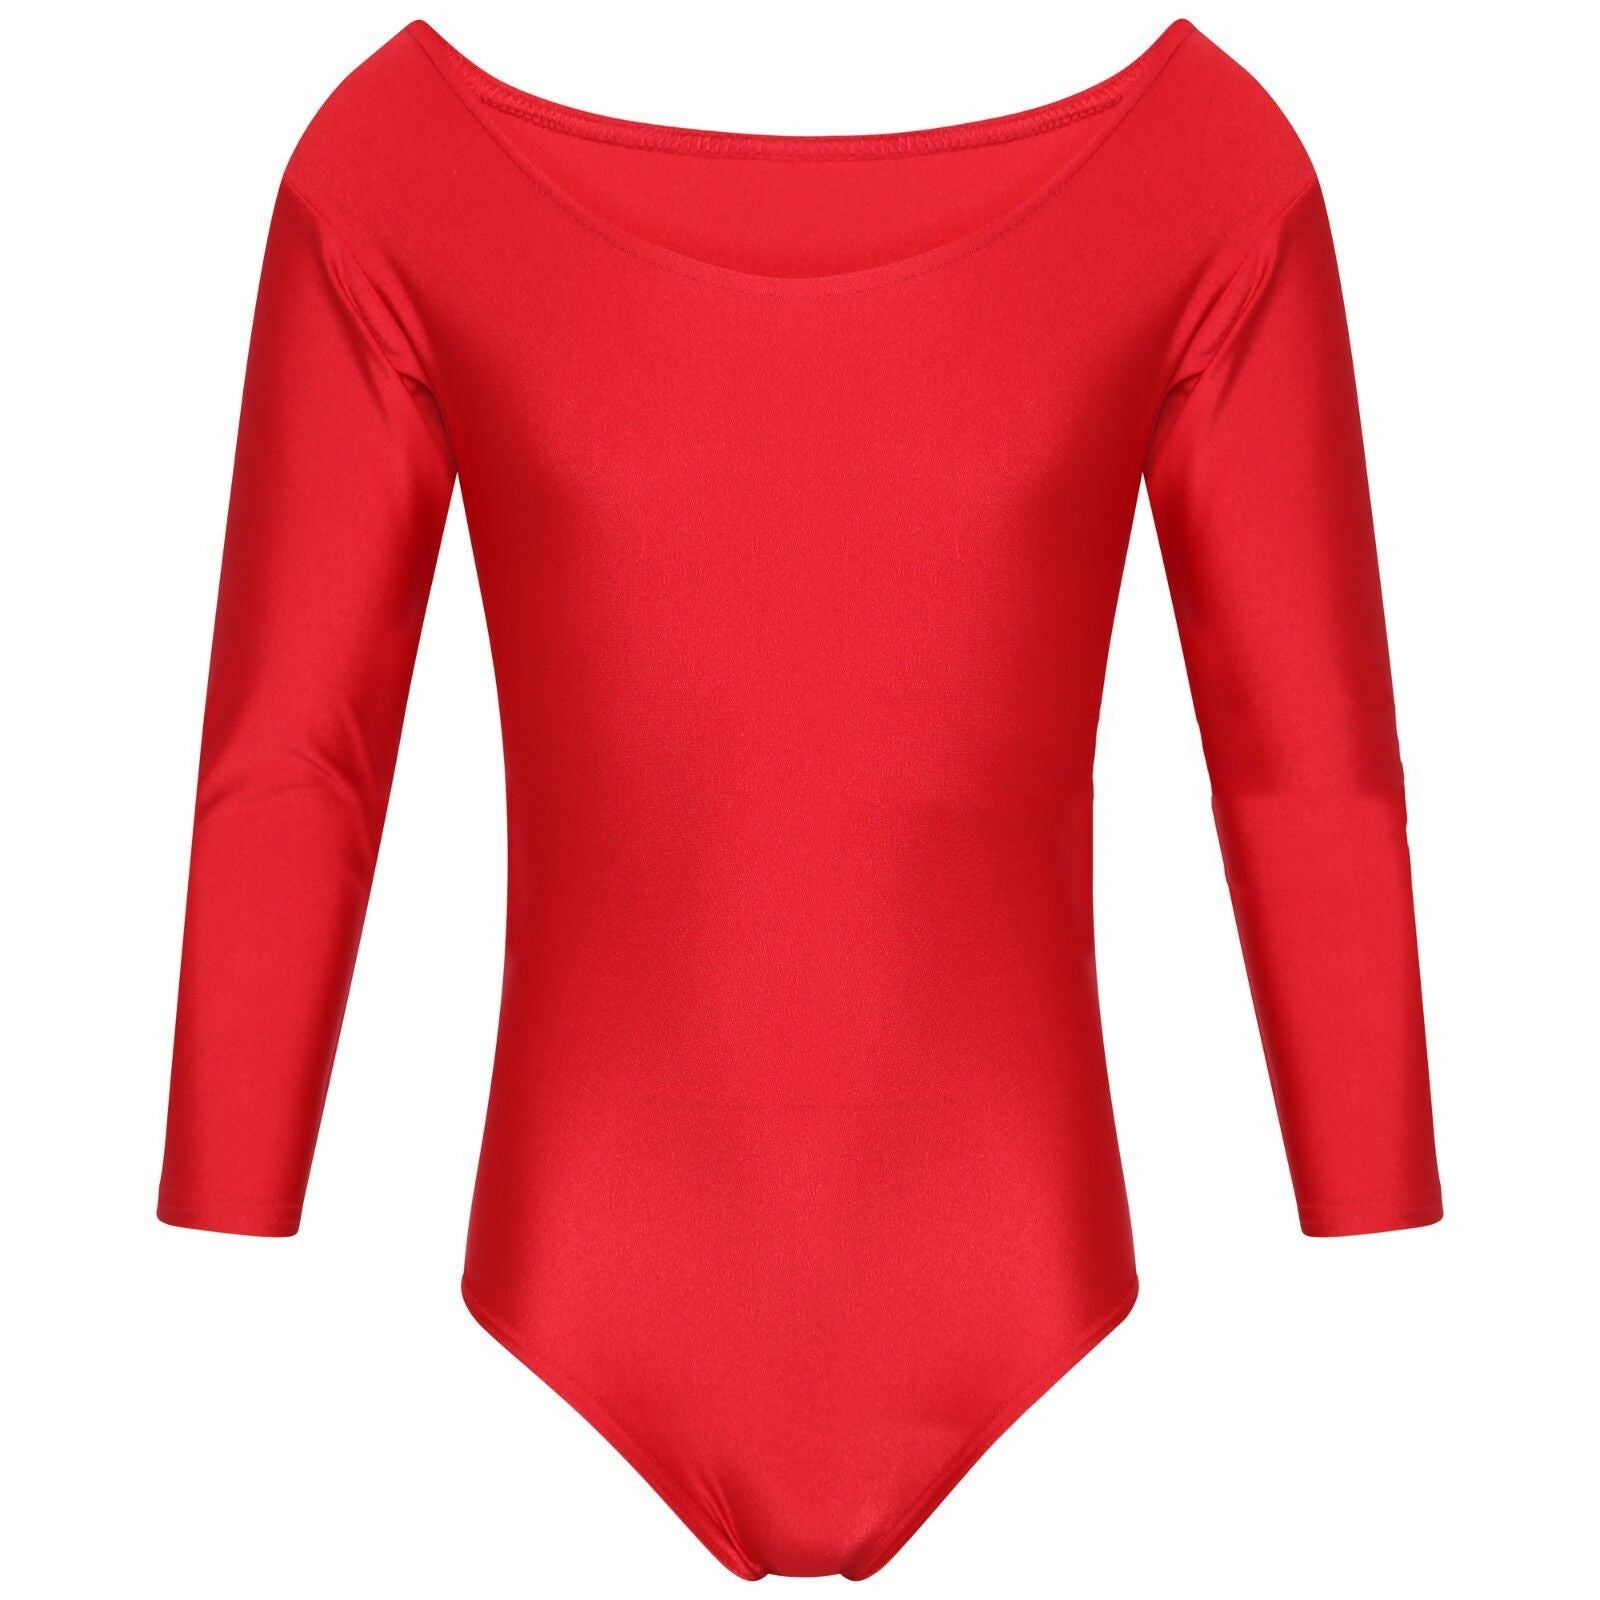 School Uniform Kids Girls Leotard Long Sleeve Sports Gymnastics Ballet Dance -Red Machine Washable